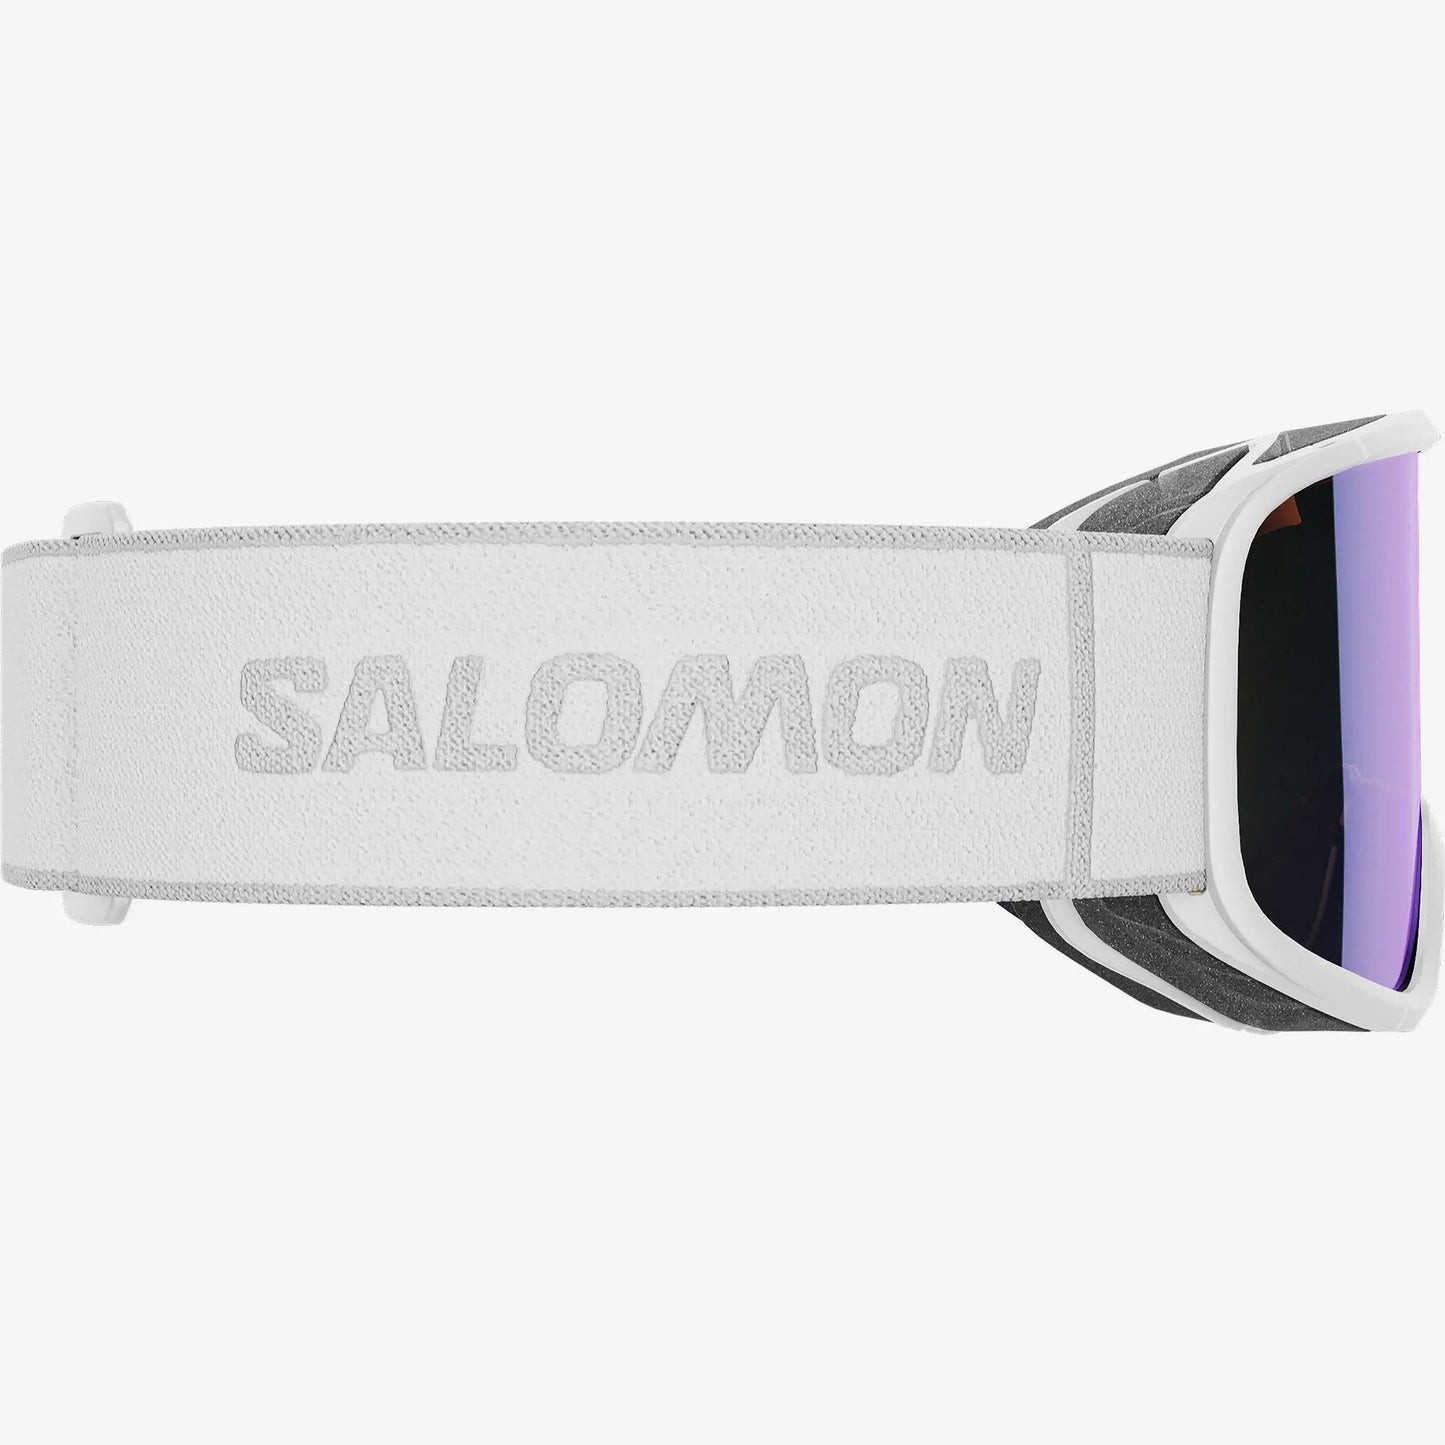 SALOMON AKSIUM 2.0 S PHOTOCHROMIC WHITE